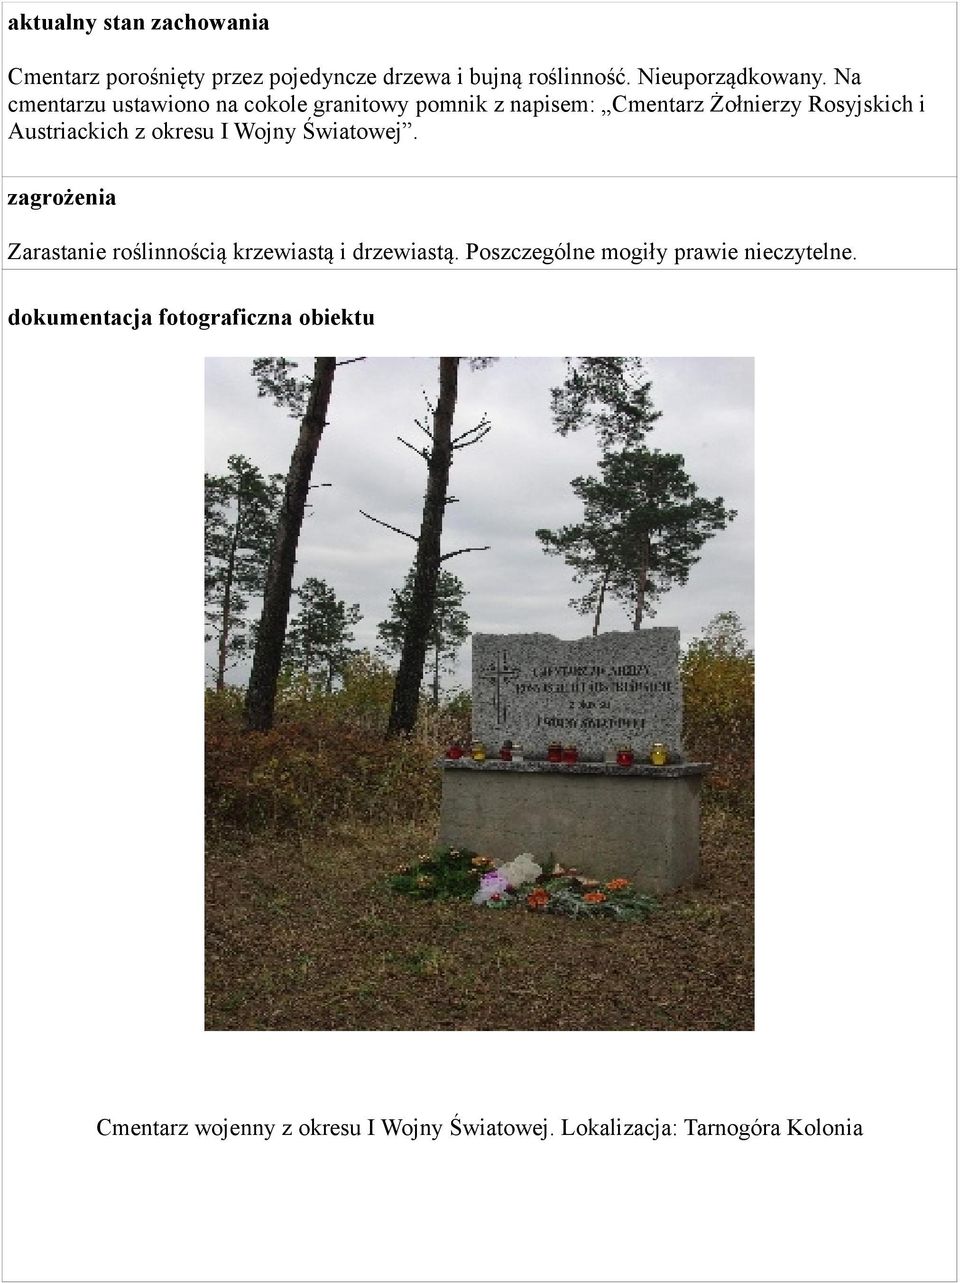 Na cmentarzu ustawiono na cokole granitowy pomnik z napisem: Cmentarz Żołnierzy Rosyjskich i